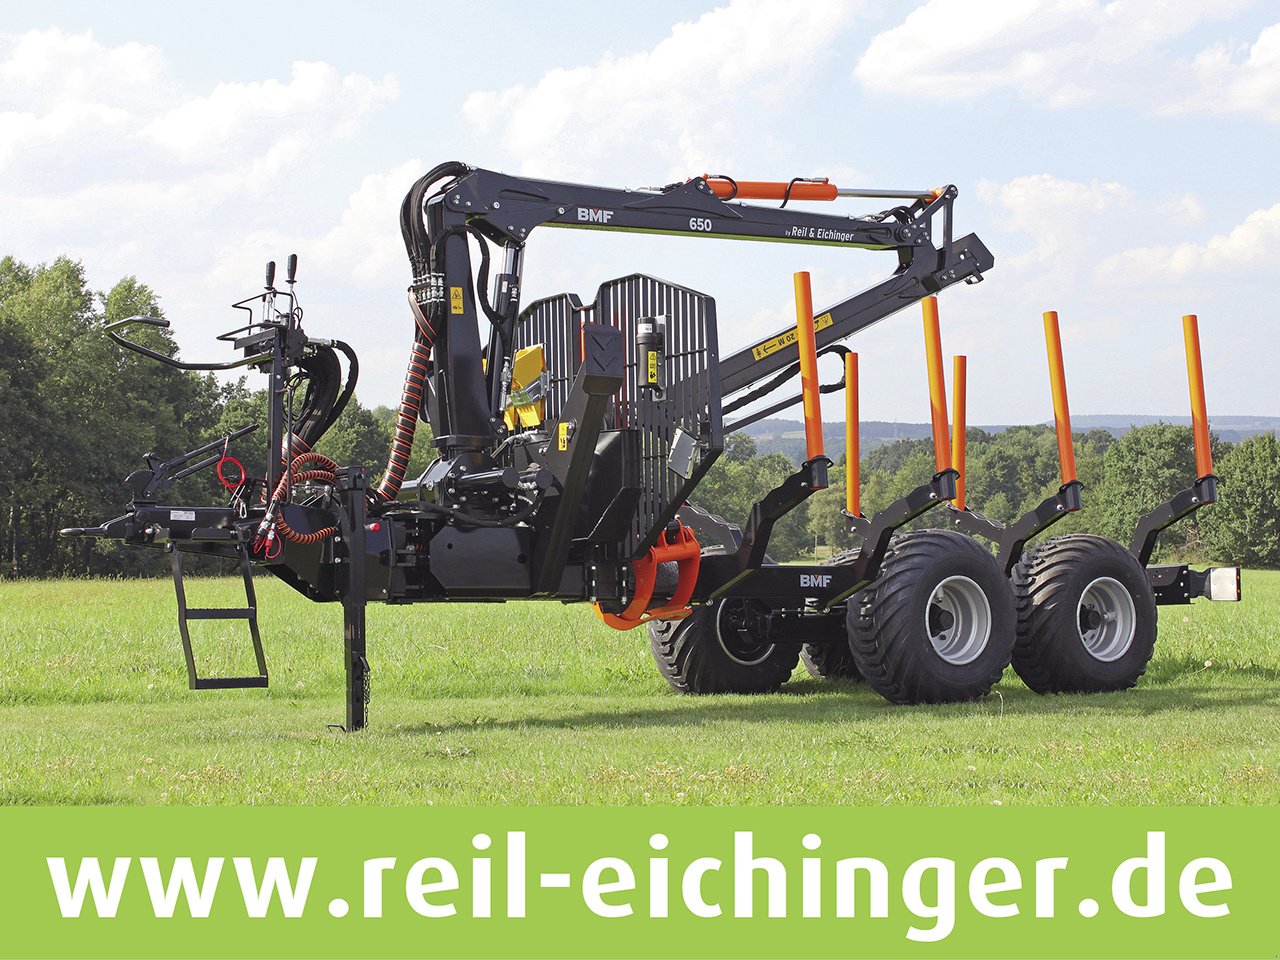 Rückewagen & Rückeanhänger des Typs Reil & Eichinger BMF 8T1/650 PRO, Neumaschine in Nittenau (Bild 1)